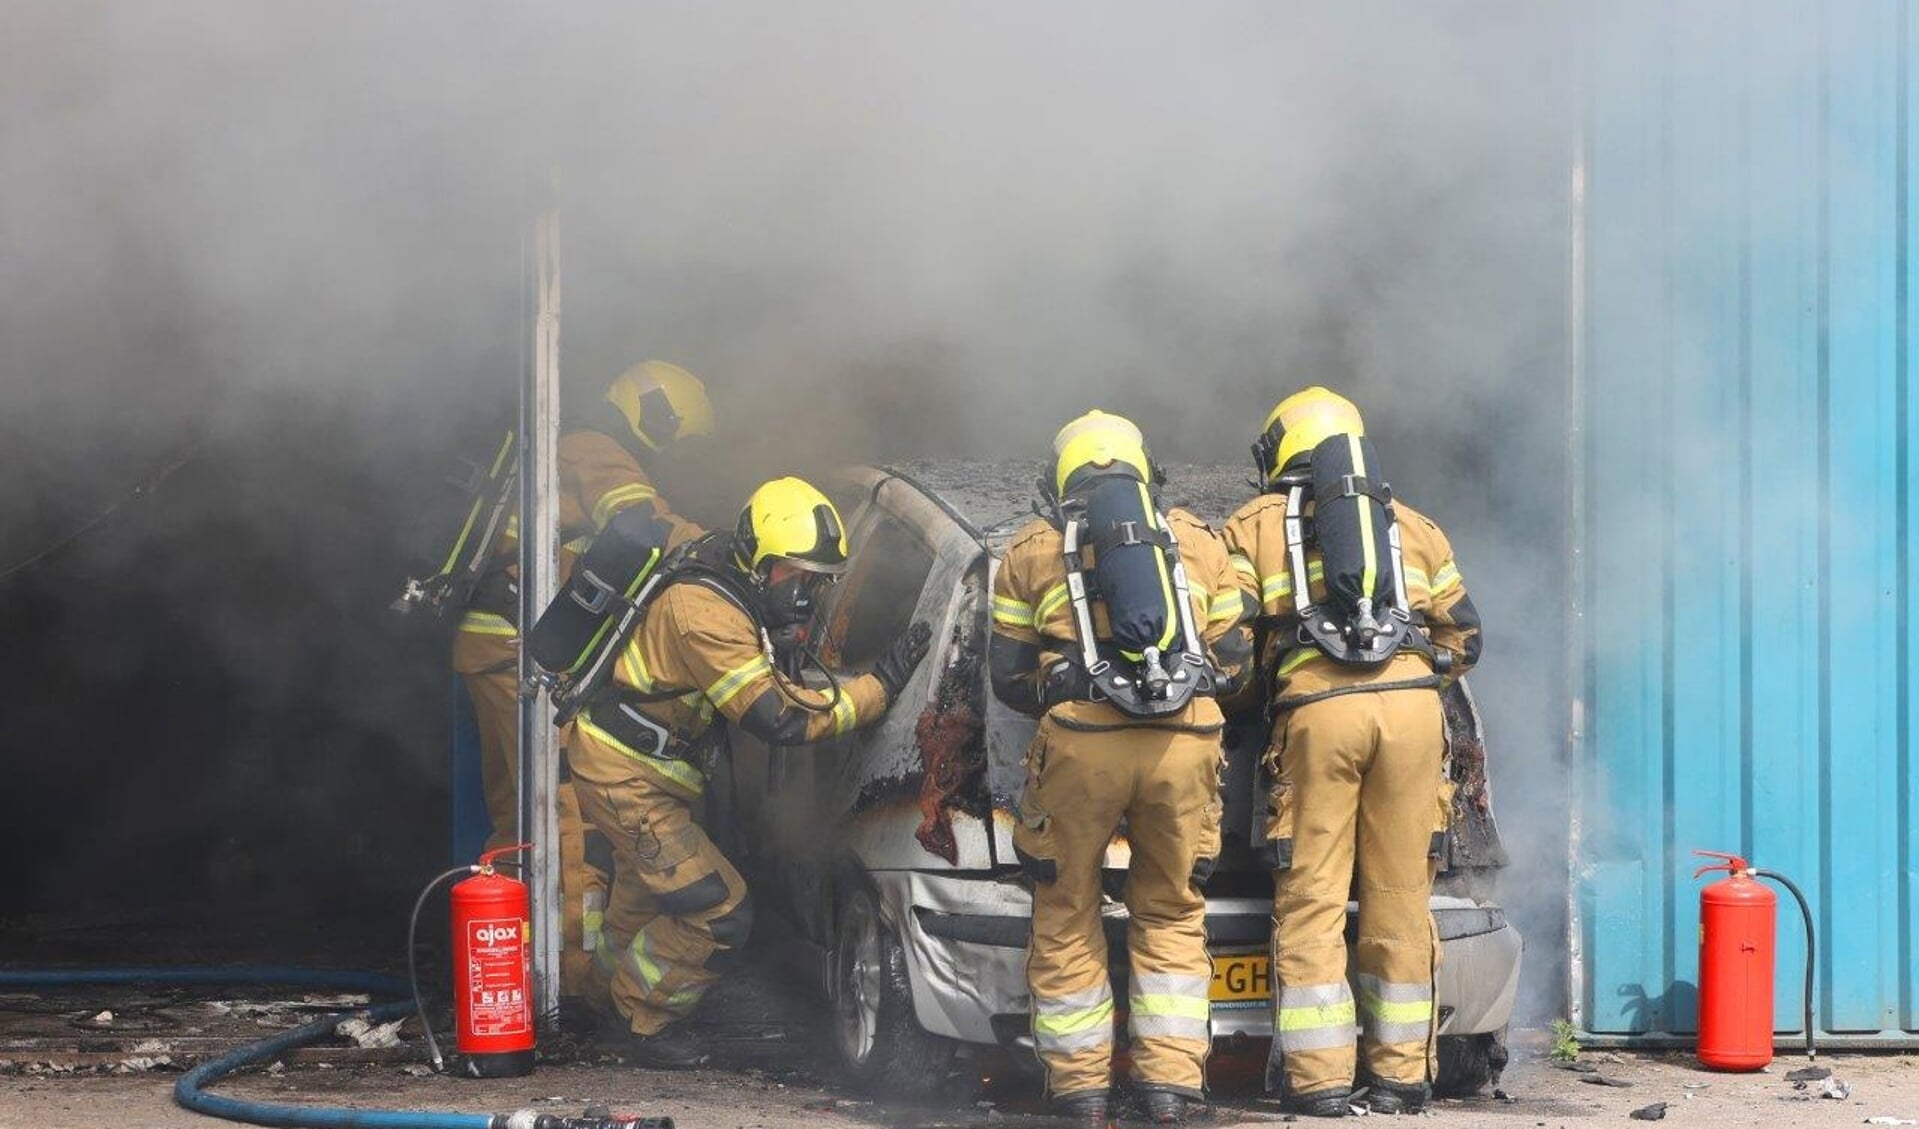 De brand die maandagochtend heeft gewoed bij een autogarage aan de Oude Vlijmenseweg in Den Bosch is ontstaan door een lekkende brandstoftank in een auto waaraan op dat moment werd gewerkt.